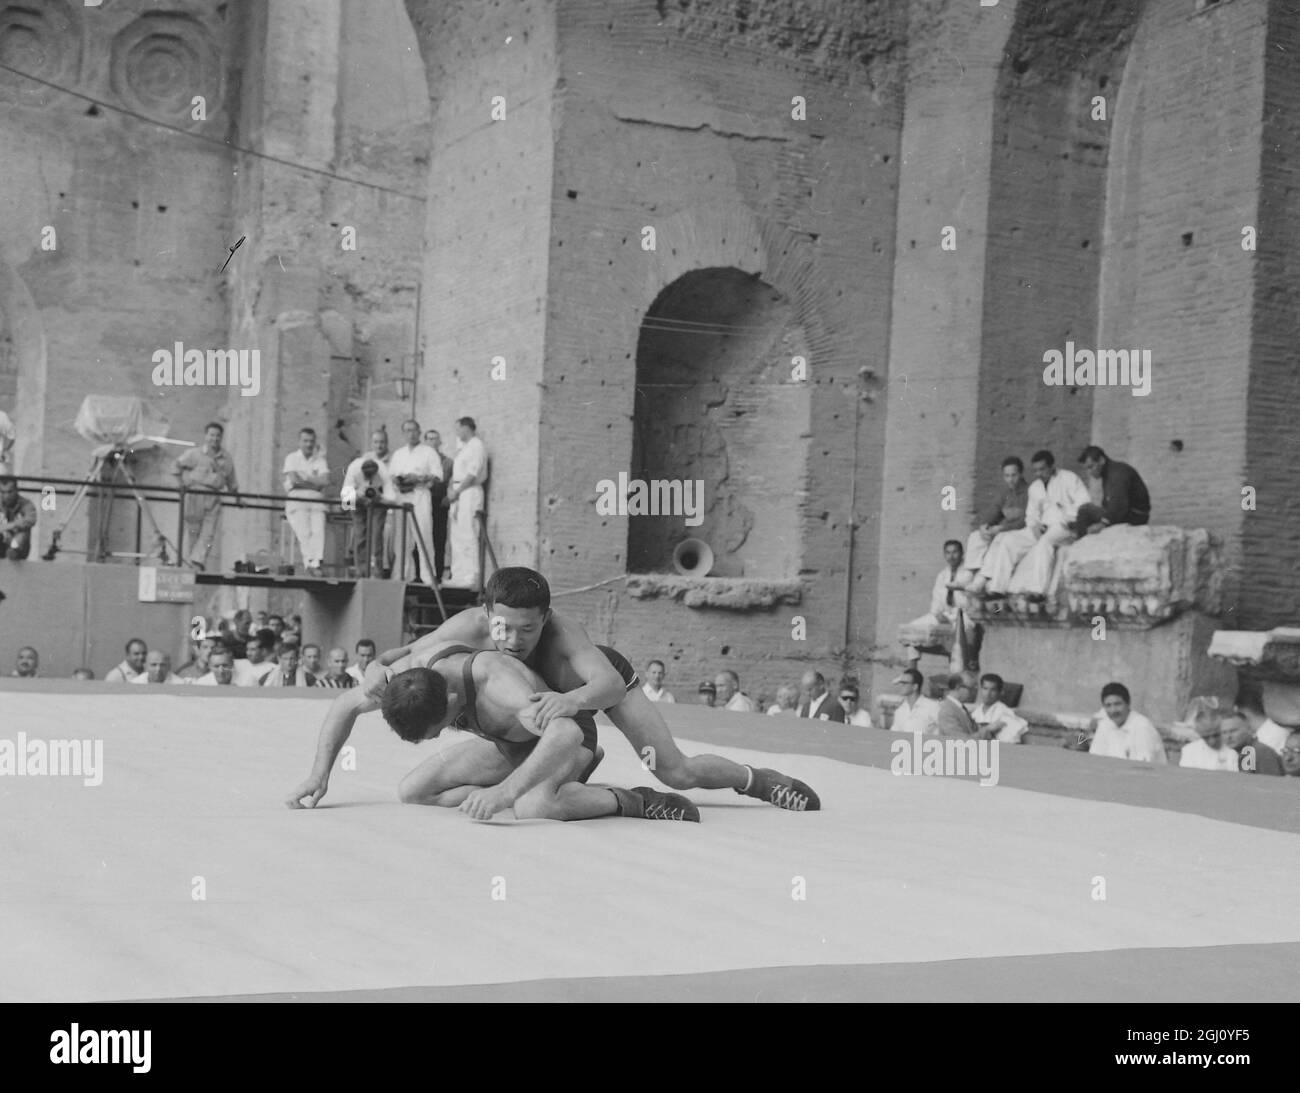 OLYMPIC GAME WRESTLING FREESTYLE BILEK V MATSUBURA 31 AUGUST 1960 Stock Photo